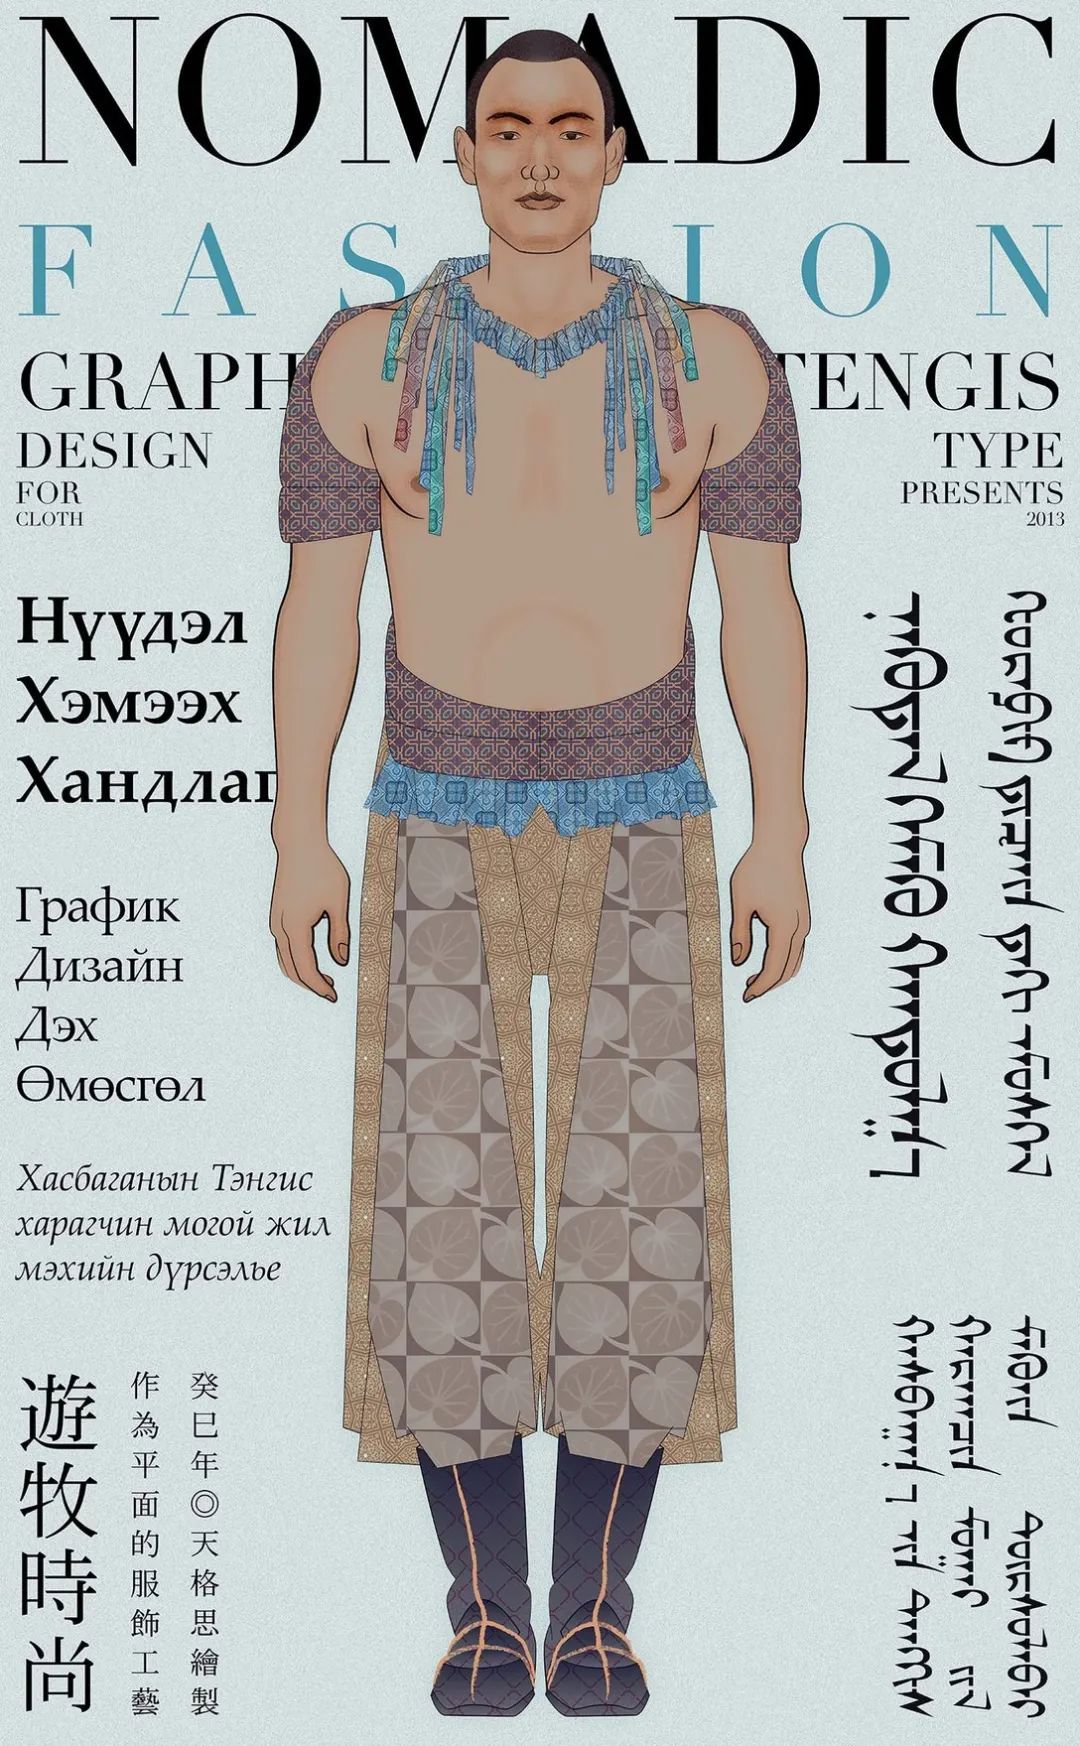 字造潮流 | 蒙古文世界的文字设计——天格思